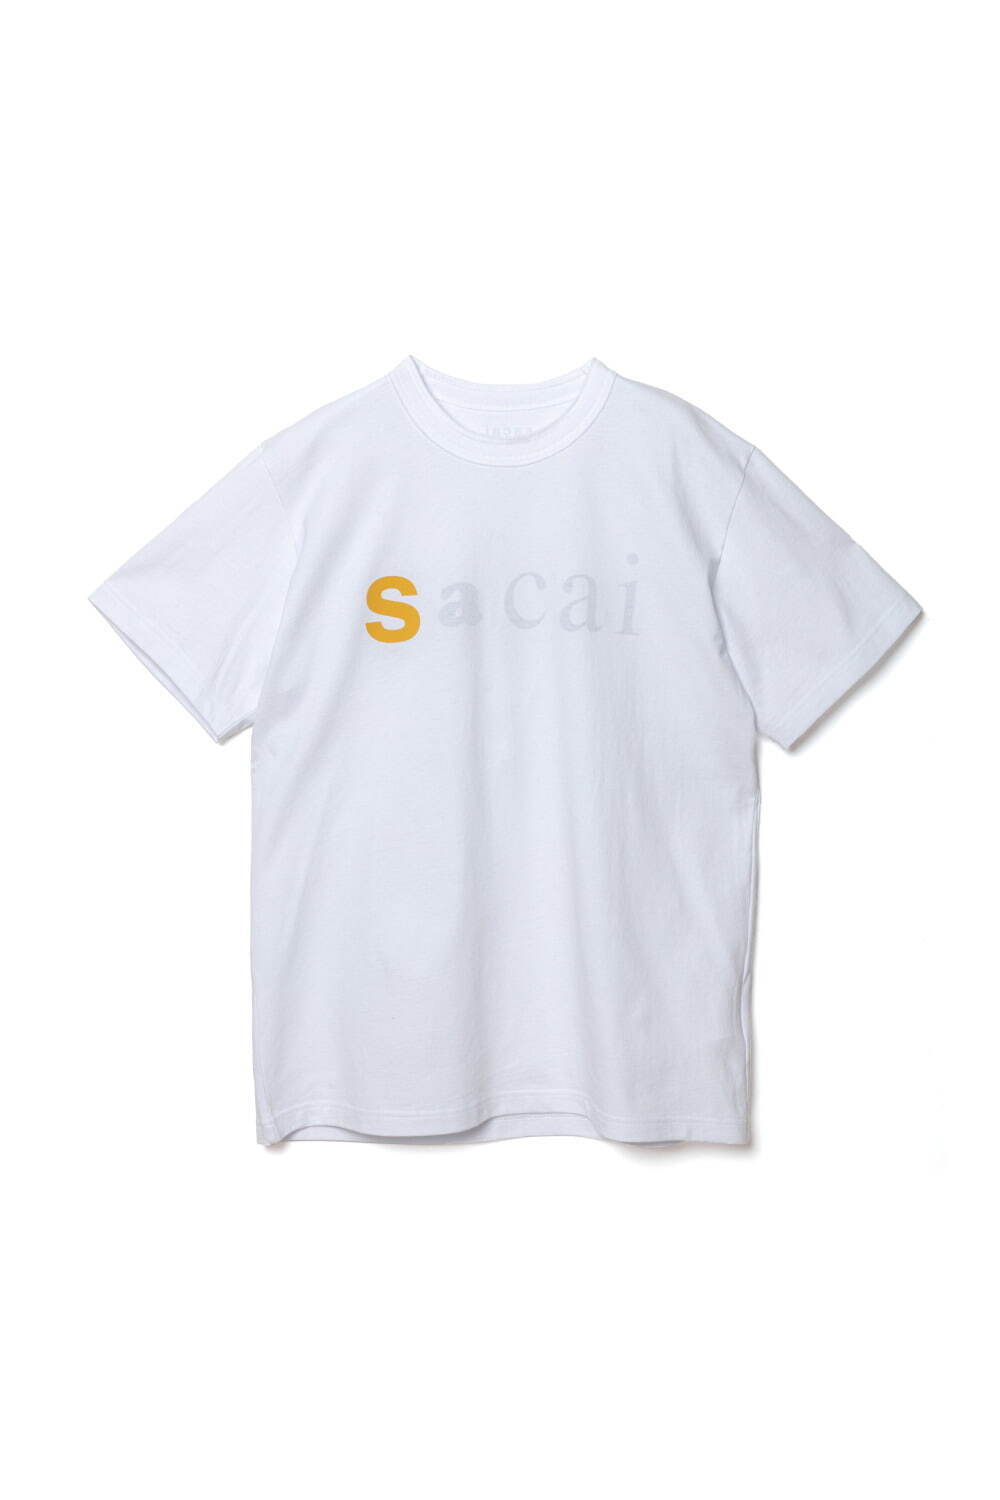 sacai Tシャツ ロゴ www.krzysztofbialy.com